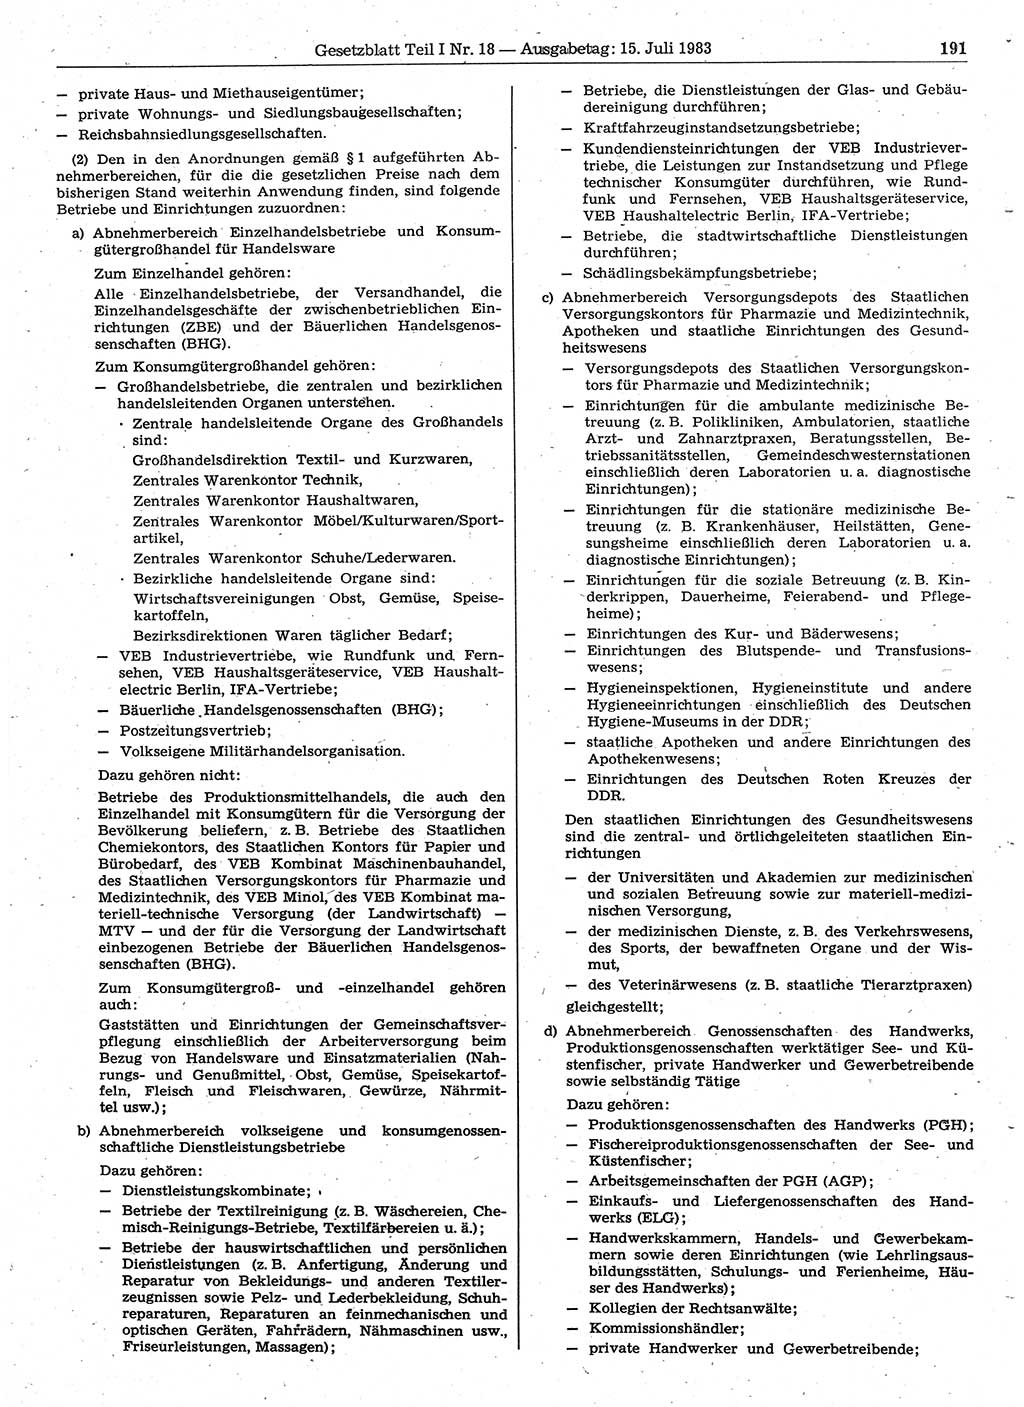 Gesetzblatt (GBl.) der Deutschen Demokratischen Republik (DDR) Teil Ⅰ 1983, Seite 191 (GBl. DDR Ⅰ 1983, S. 191)